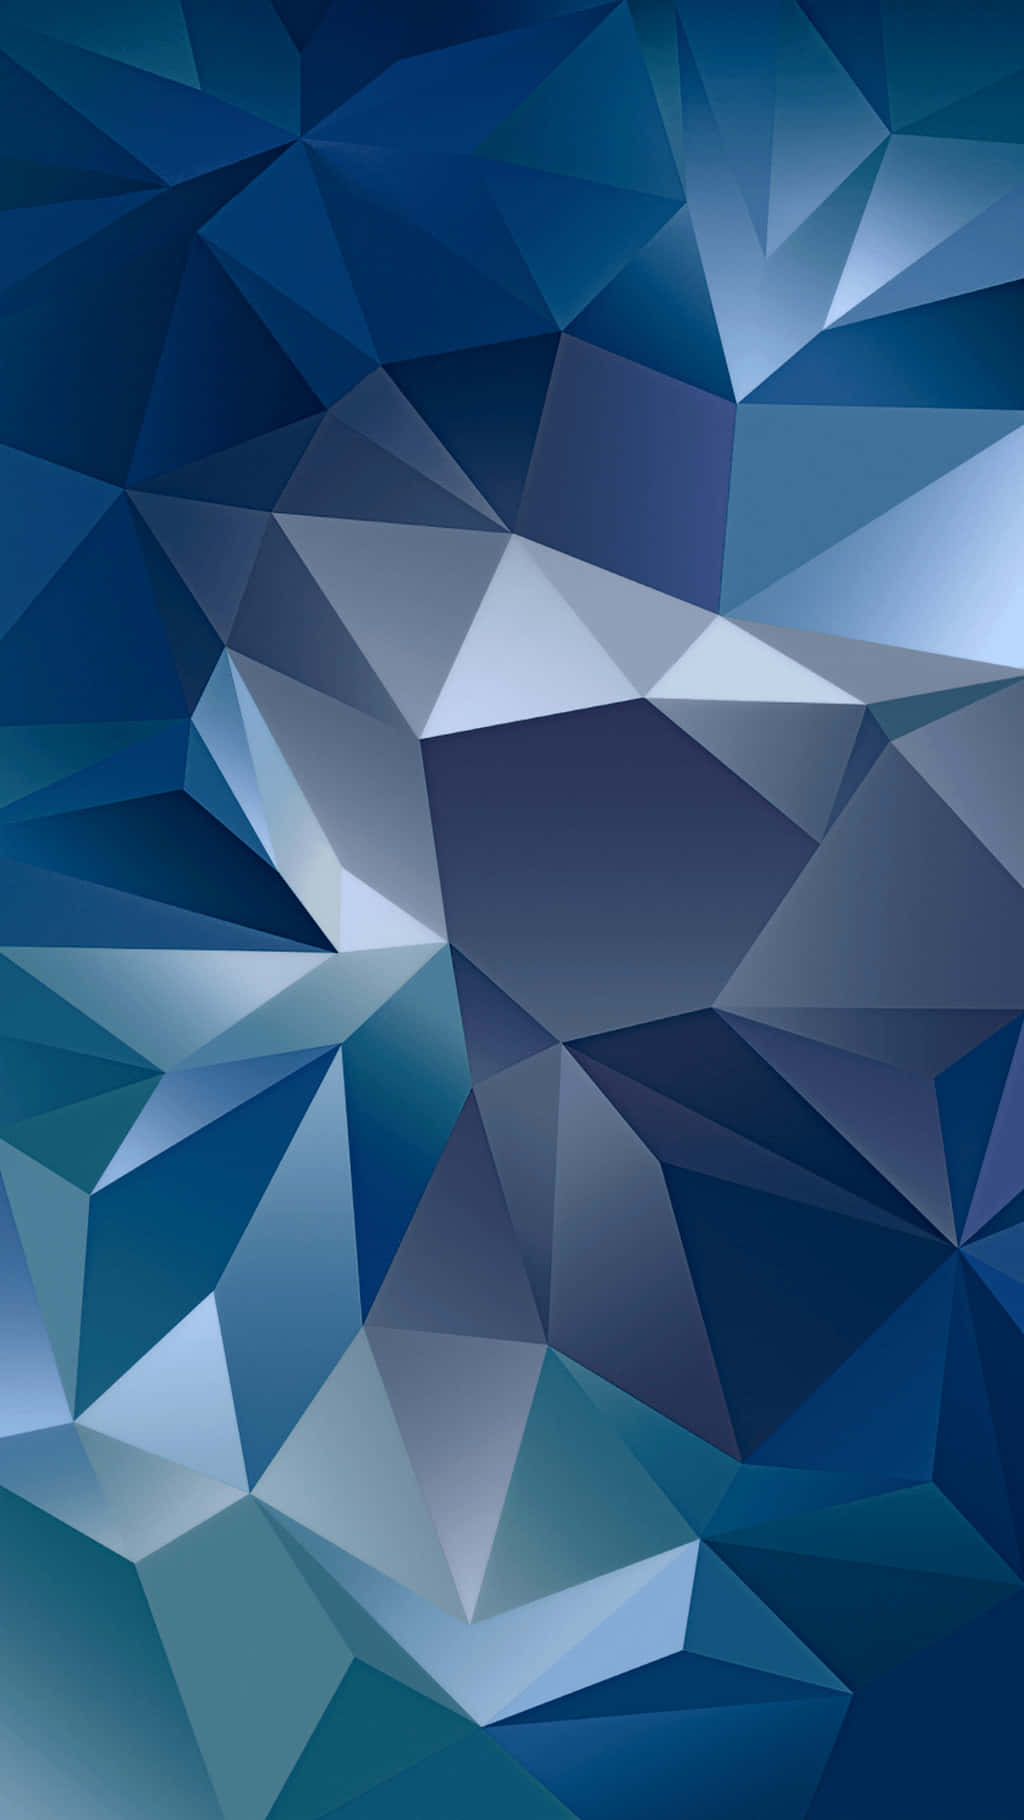 Einblaues Hintergrundbild Mit Dreiecken Und Dreiecken.